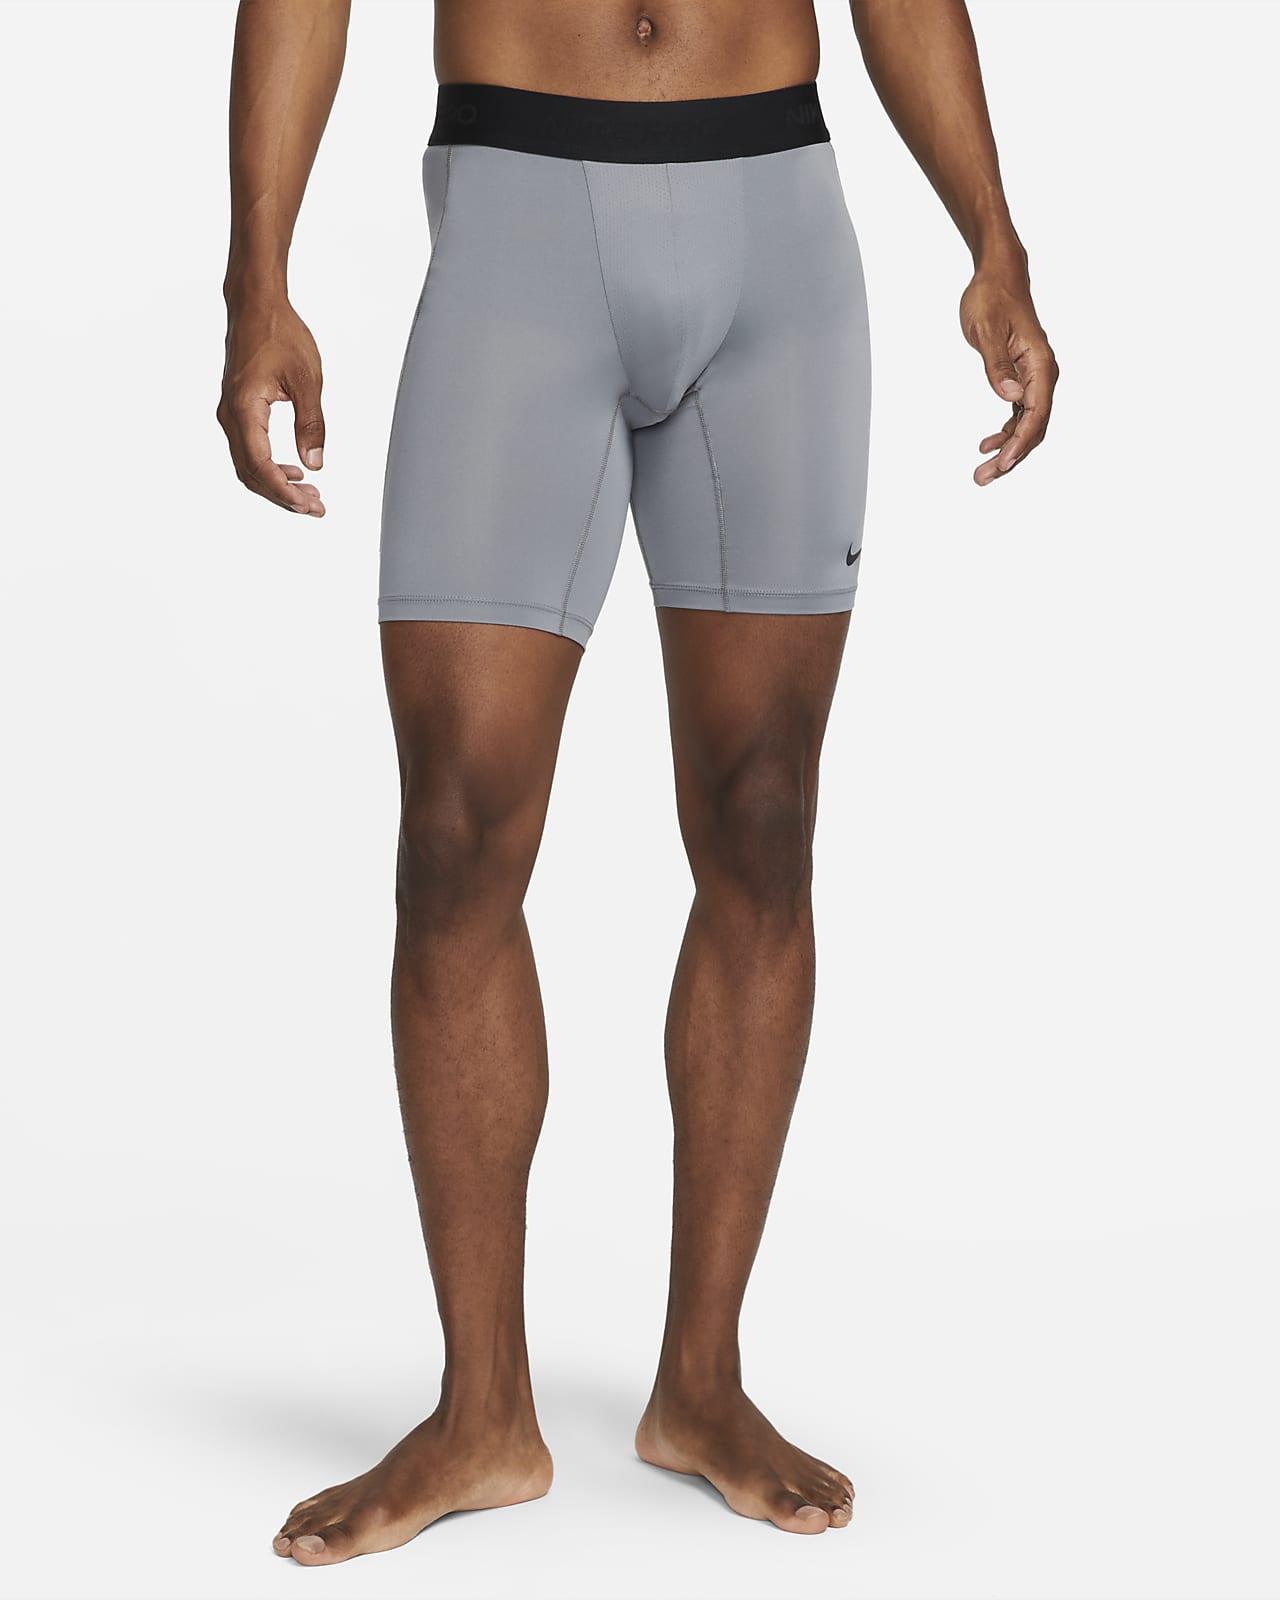 Nike Pro Men's Dri-FIT Tight Short-Sleeve Fitness Top. Nike LU